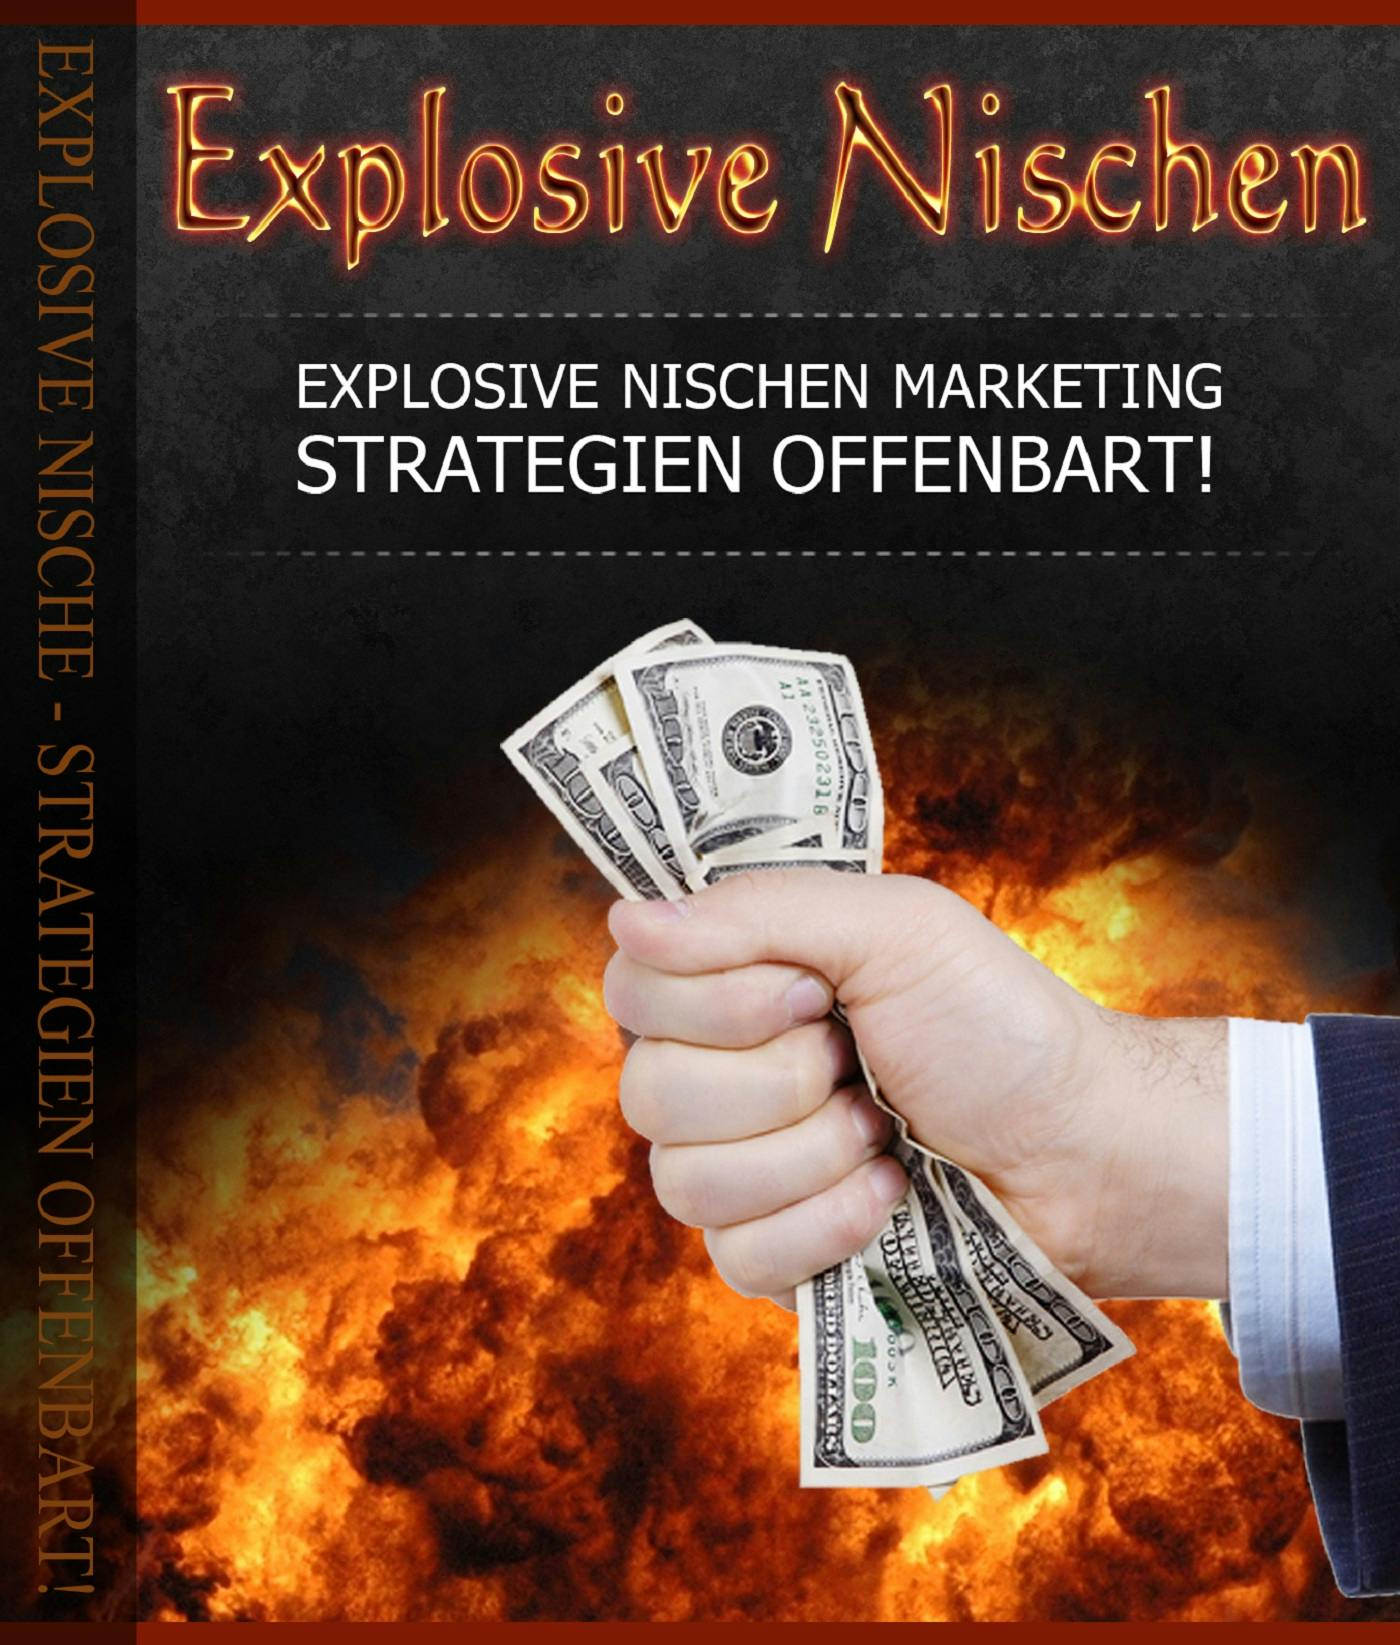 Explosive Nischen - undefined